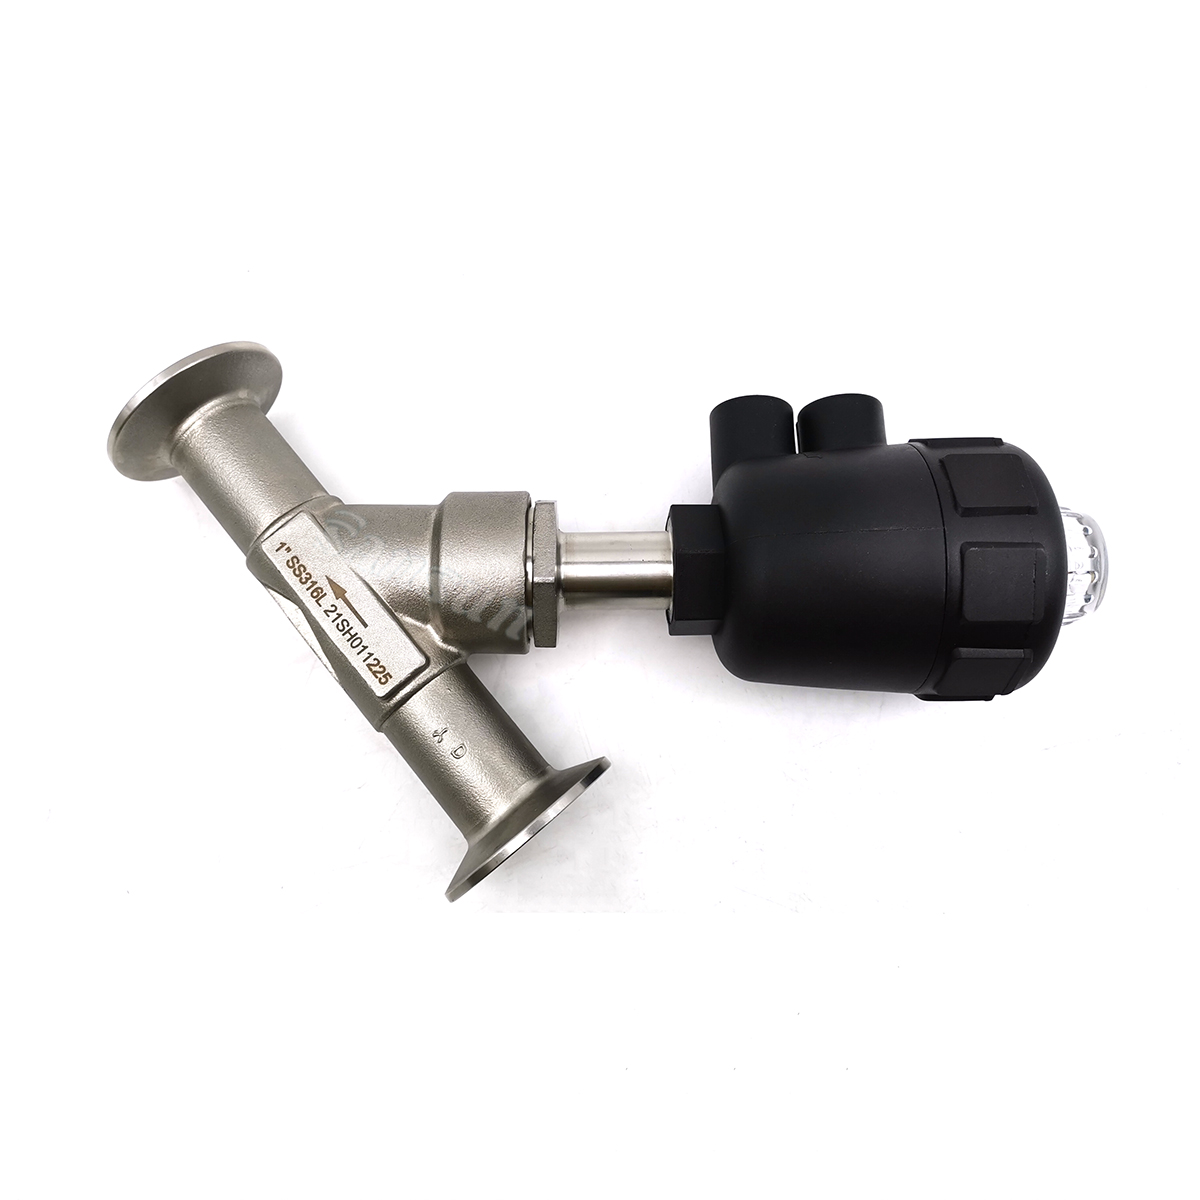 Válvula de Assento Angular Sanitária de aço inoxidável com atuador de plástico